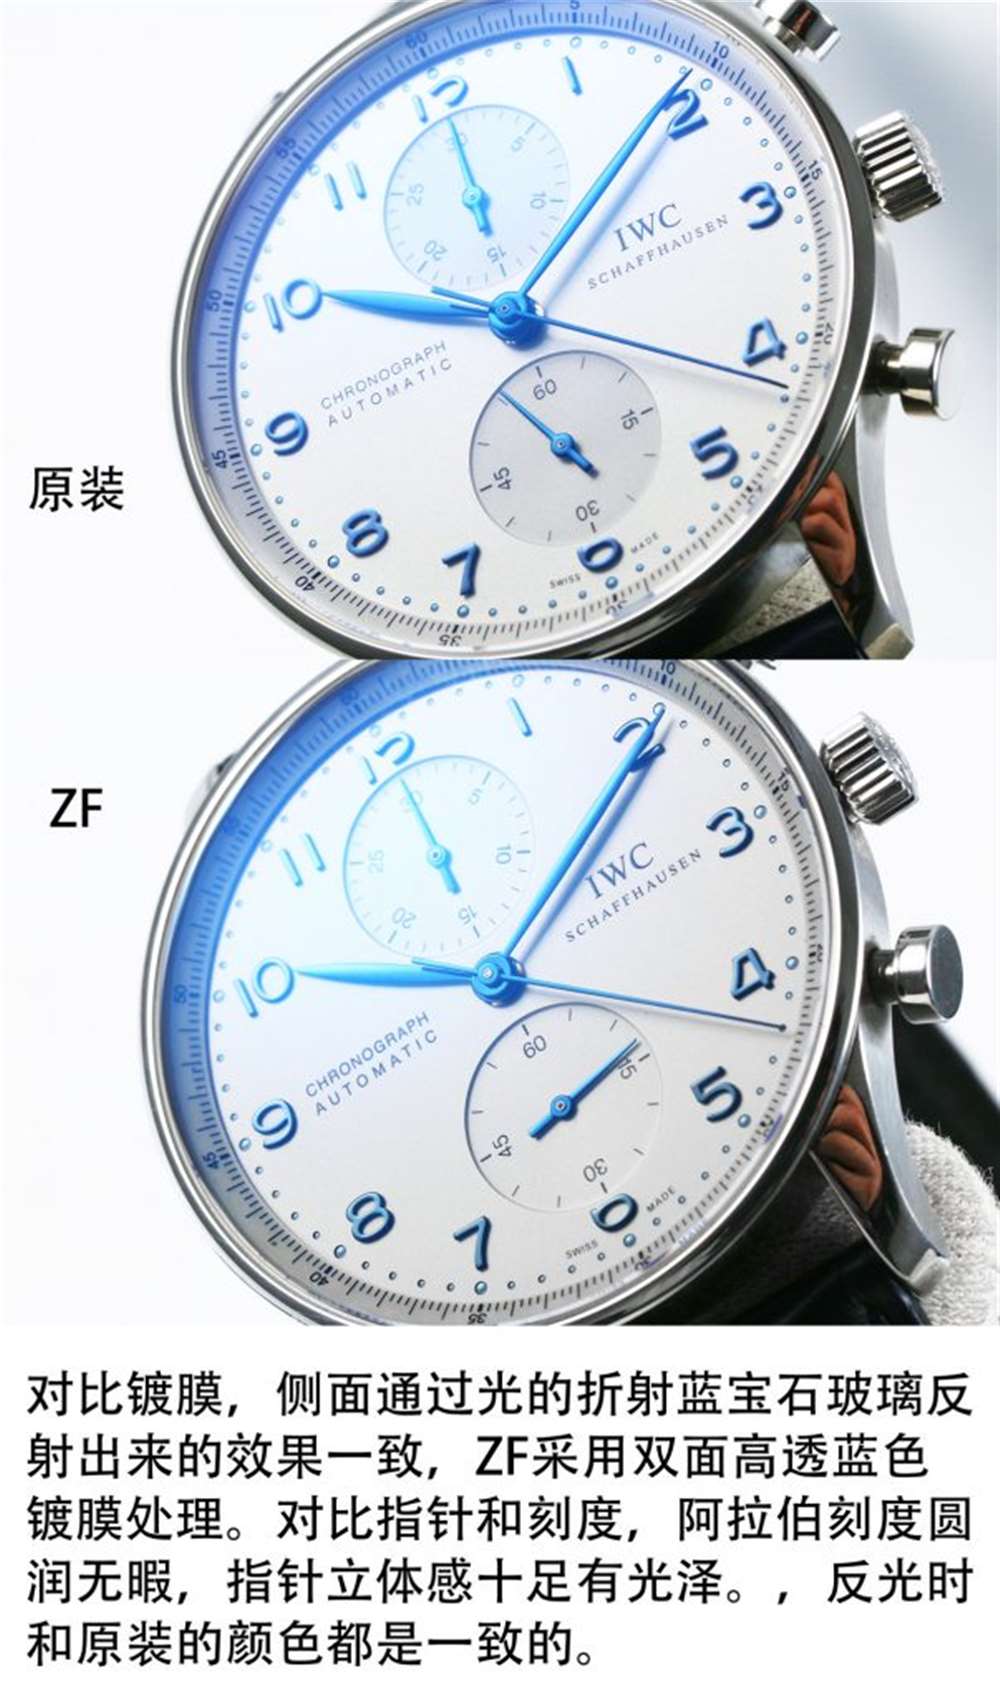 ZF厂万国葡计IW371446蓝针V2升级版对比正品评测  第5张